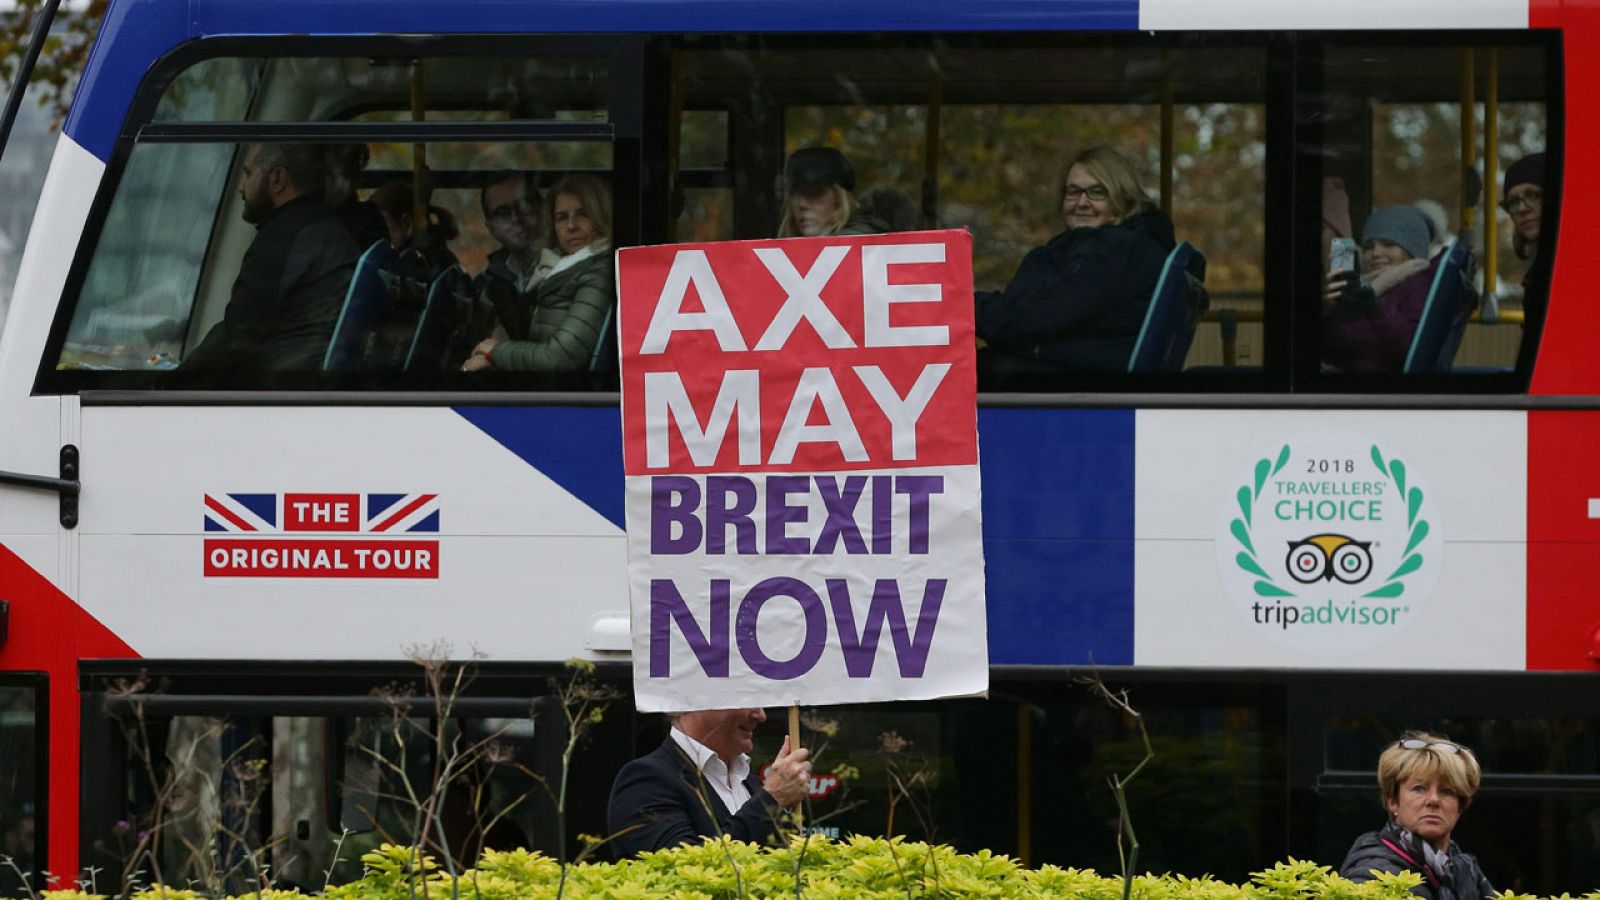 Un autobús pide en Londres "echar a May" para que haya "'Brexit' ya".